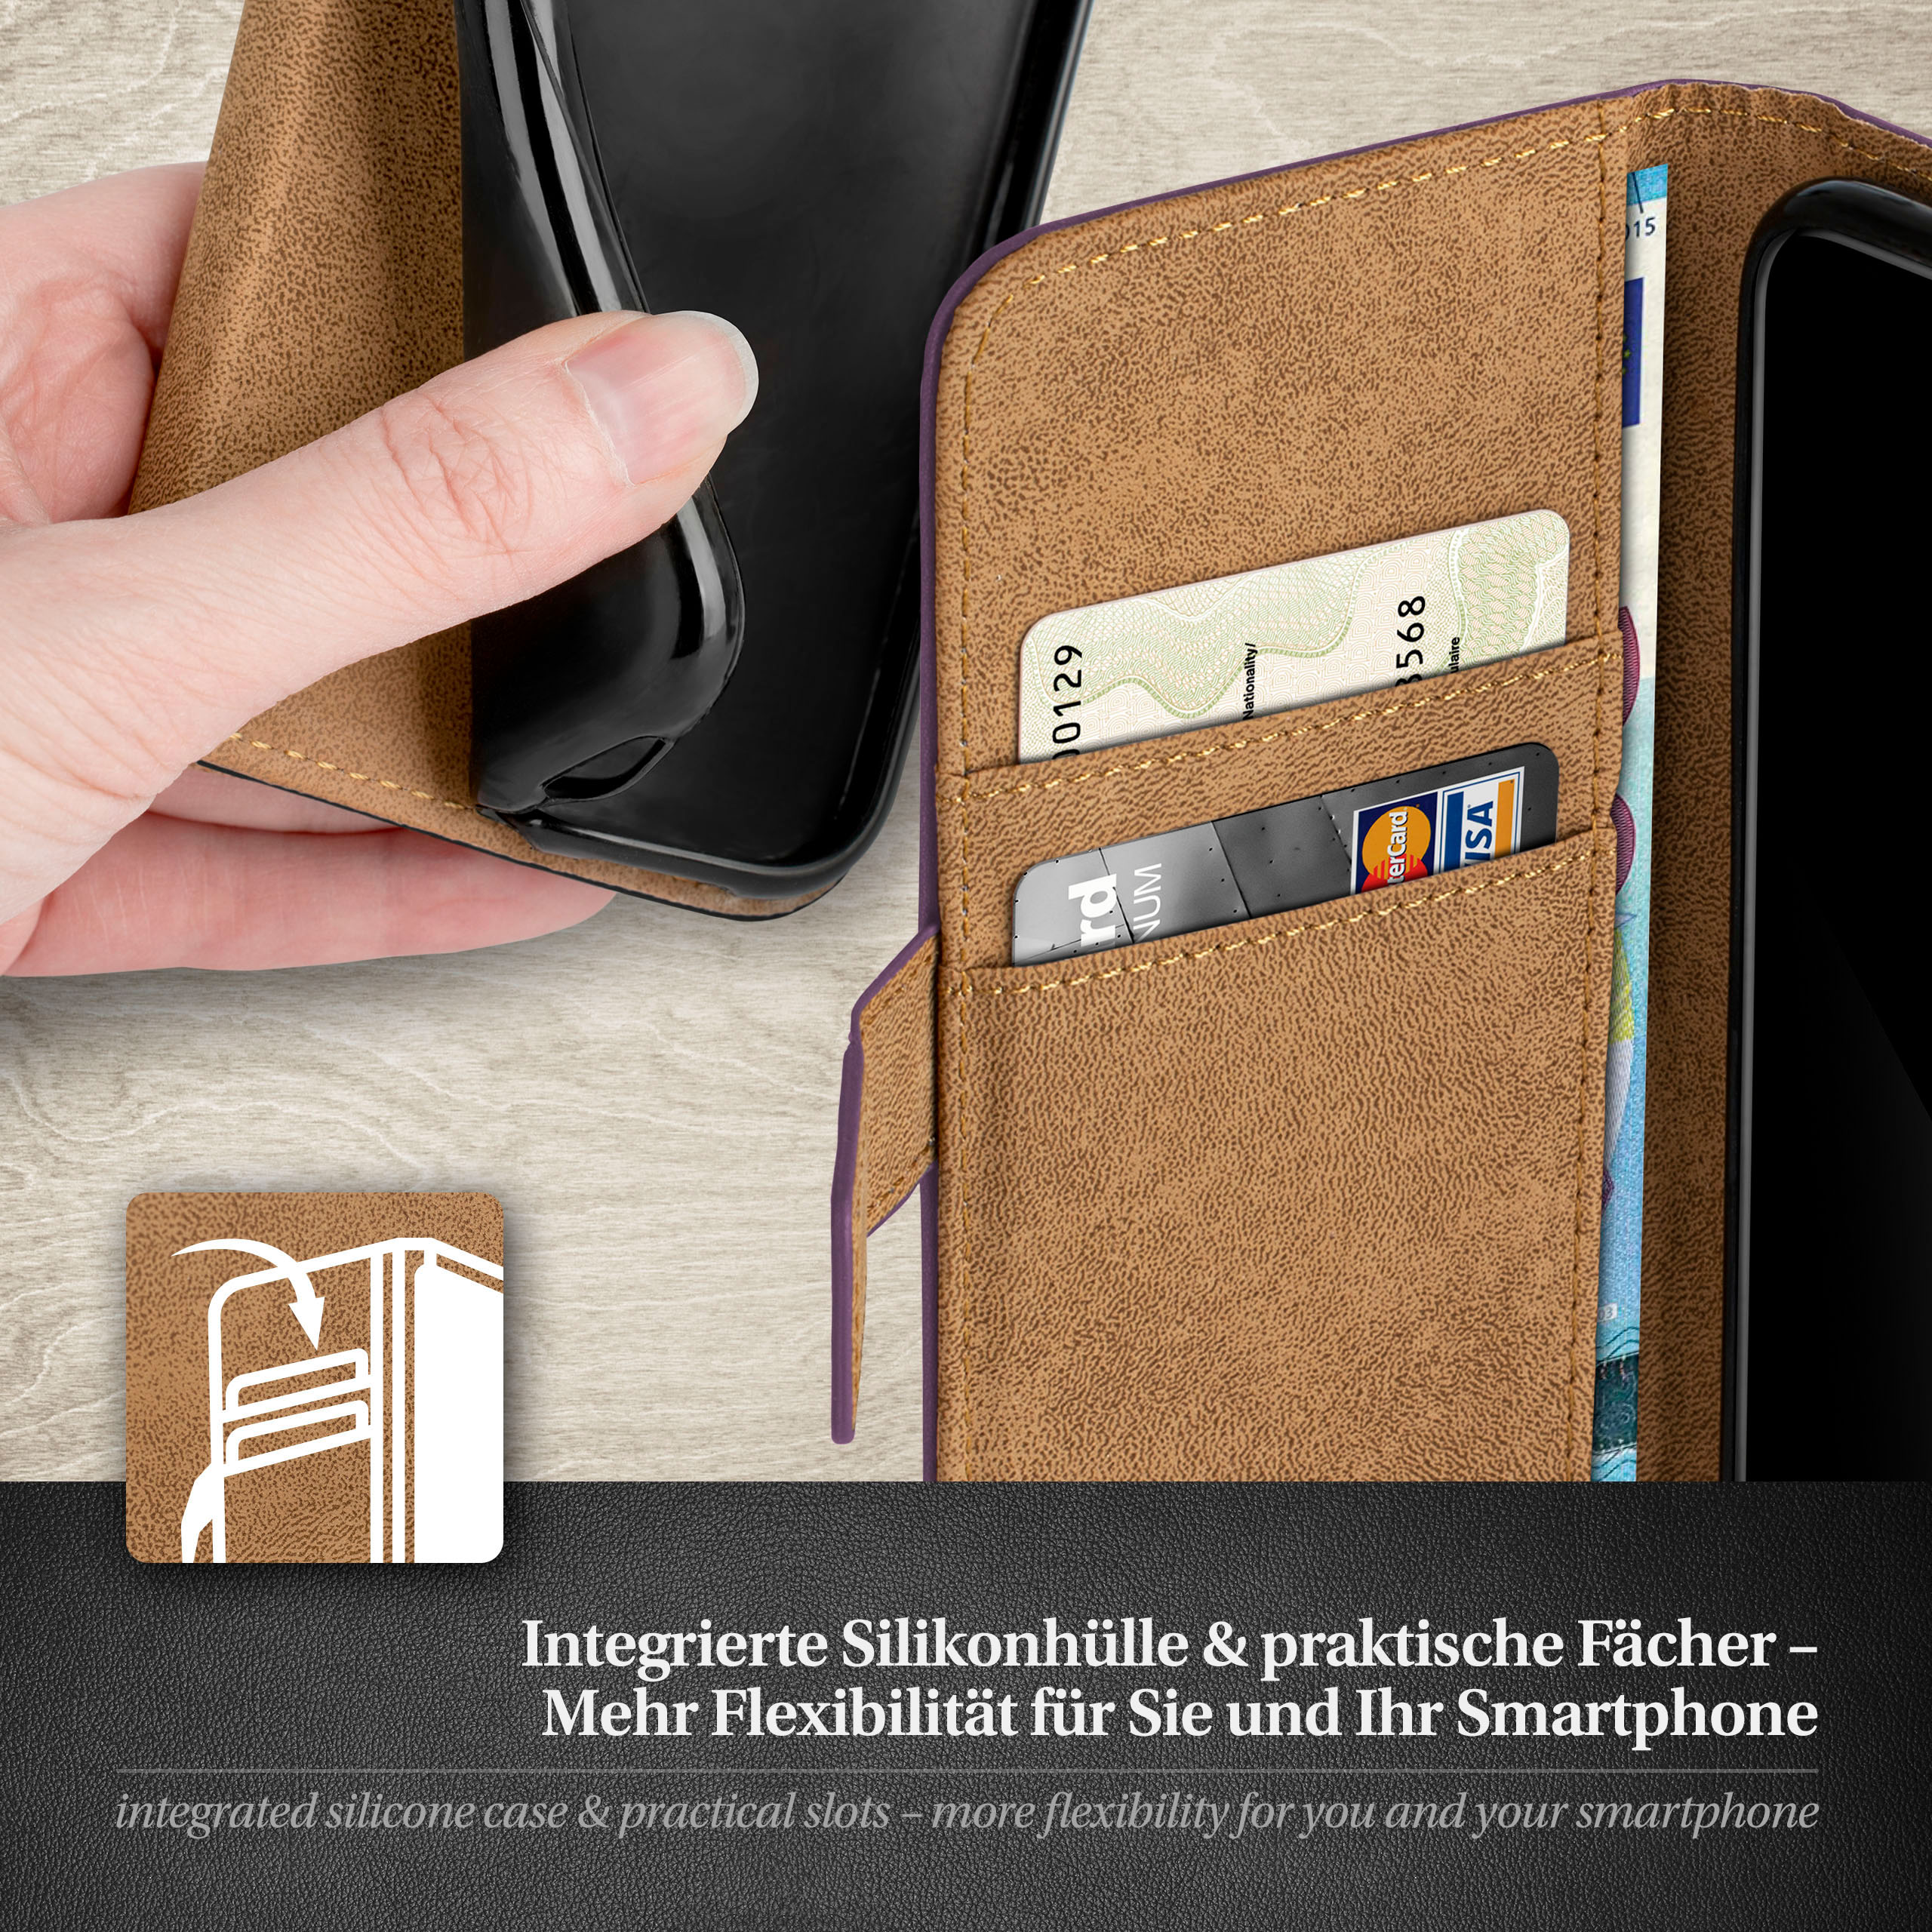 Bookcover, iPhone Indigo-Violet 5c, Book Case, Apple, MOEX